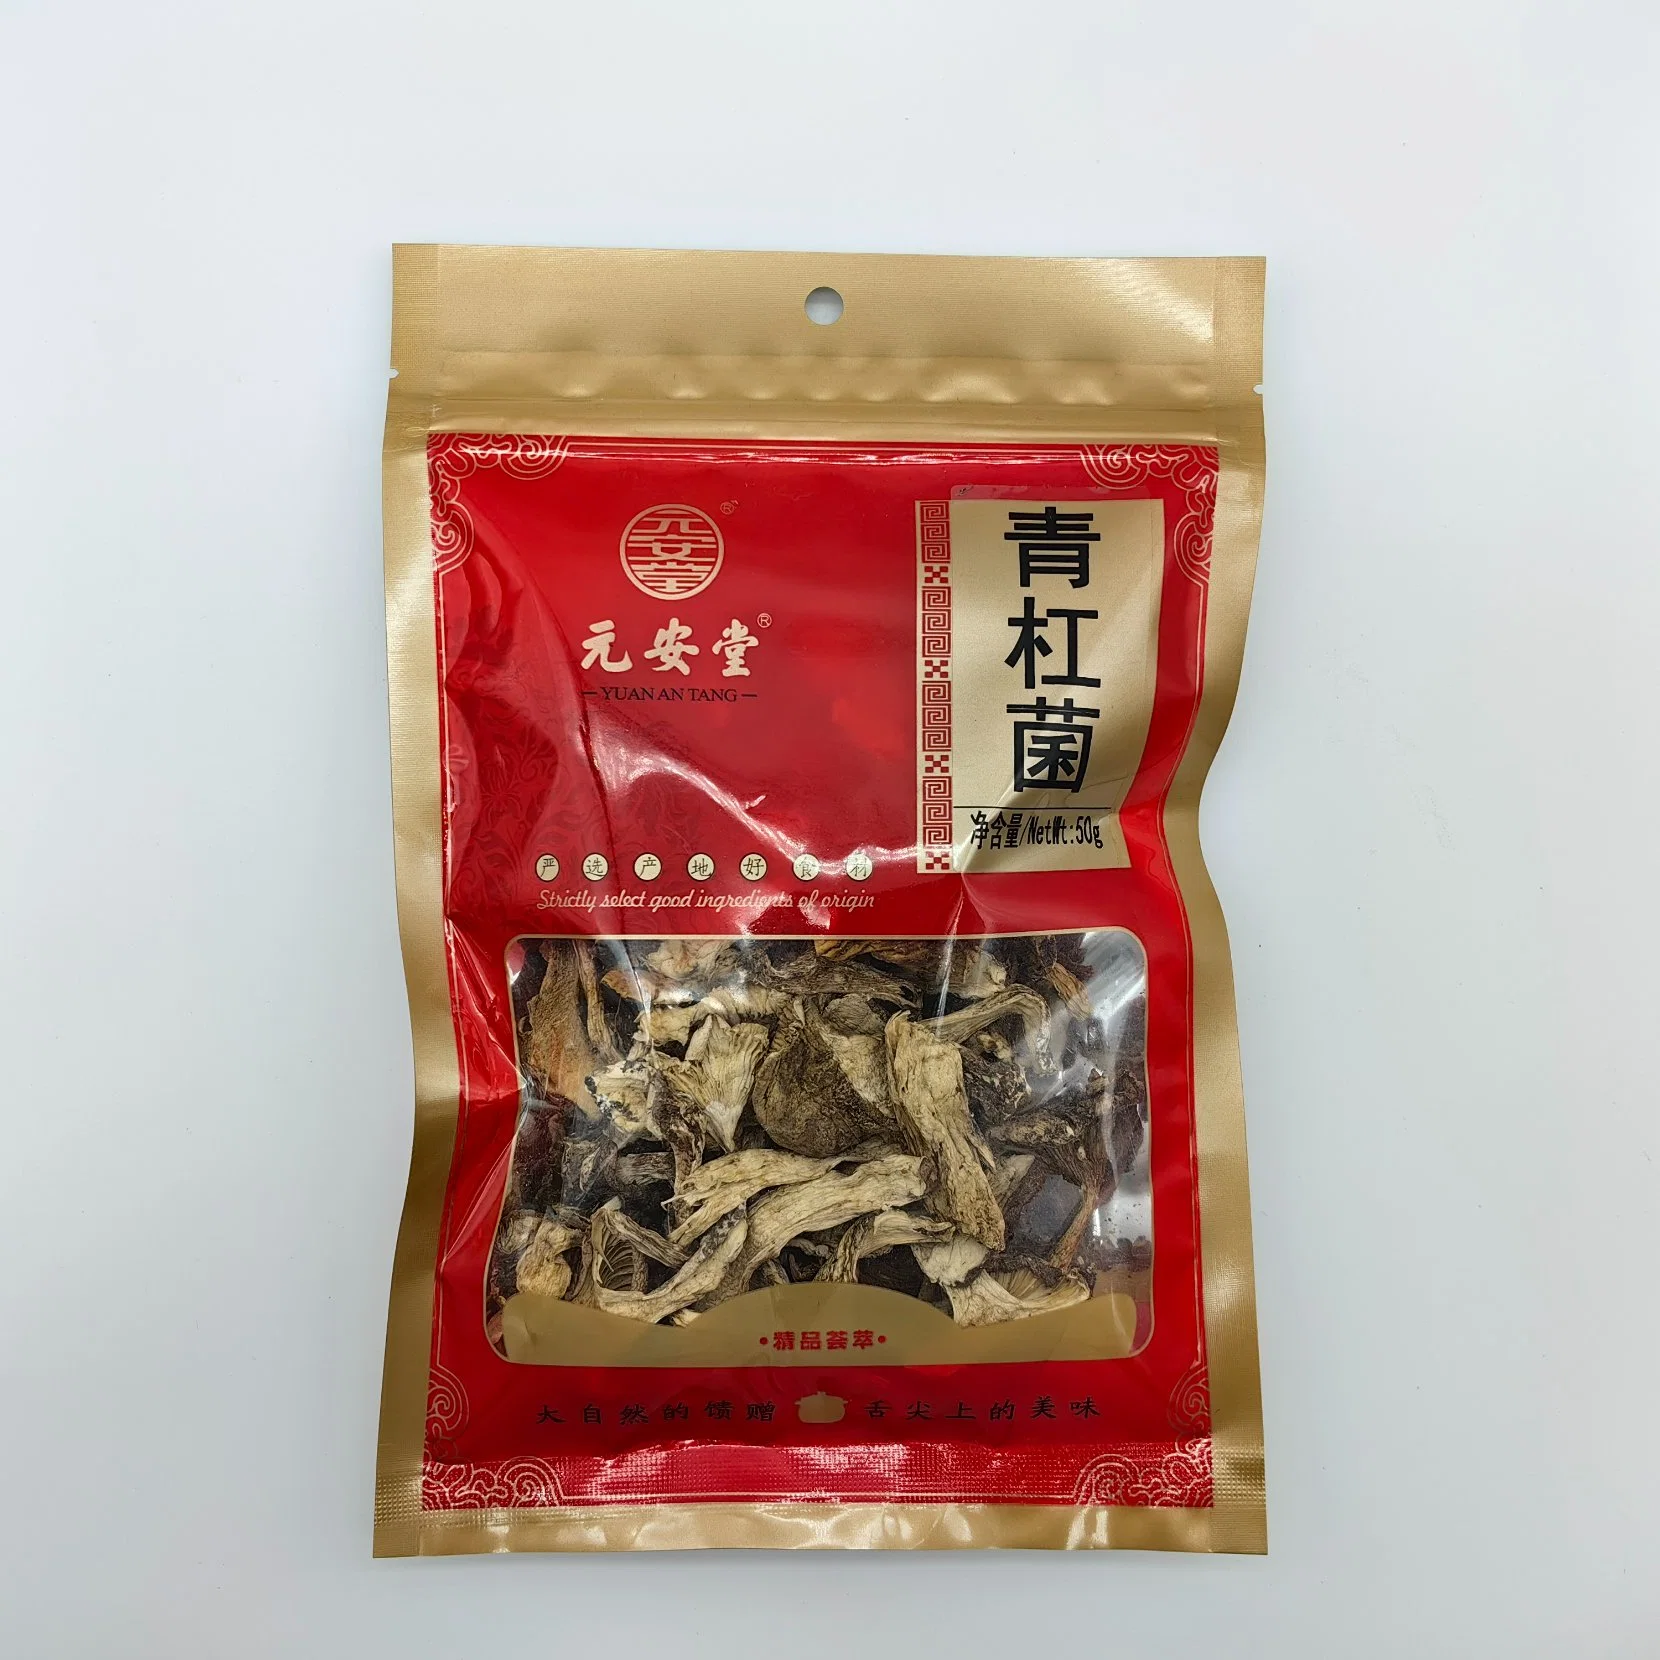 الرعاية الصحية تريشولوما باكاماتسوتوخذ شاي الأعشاب الصينية Hongo Herbal Medicine